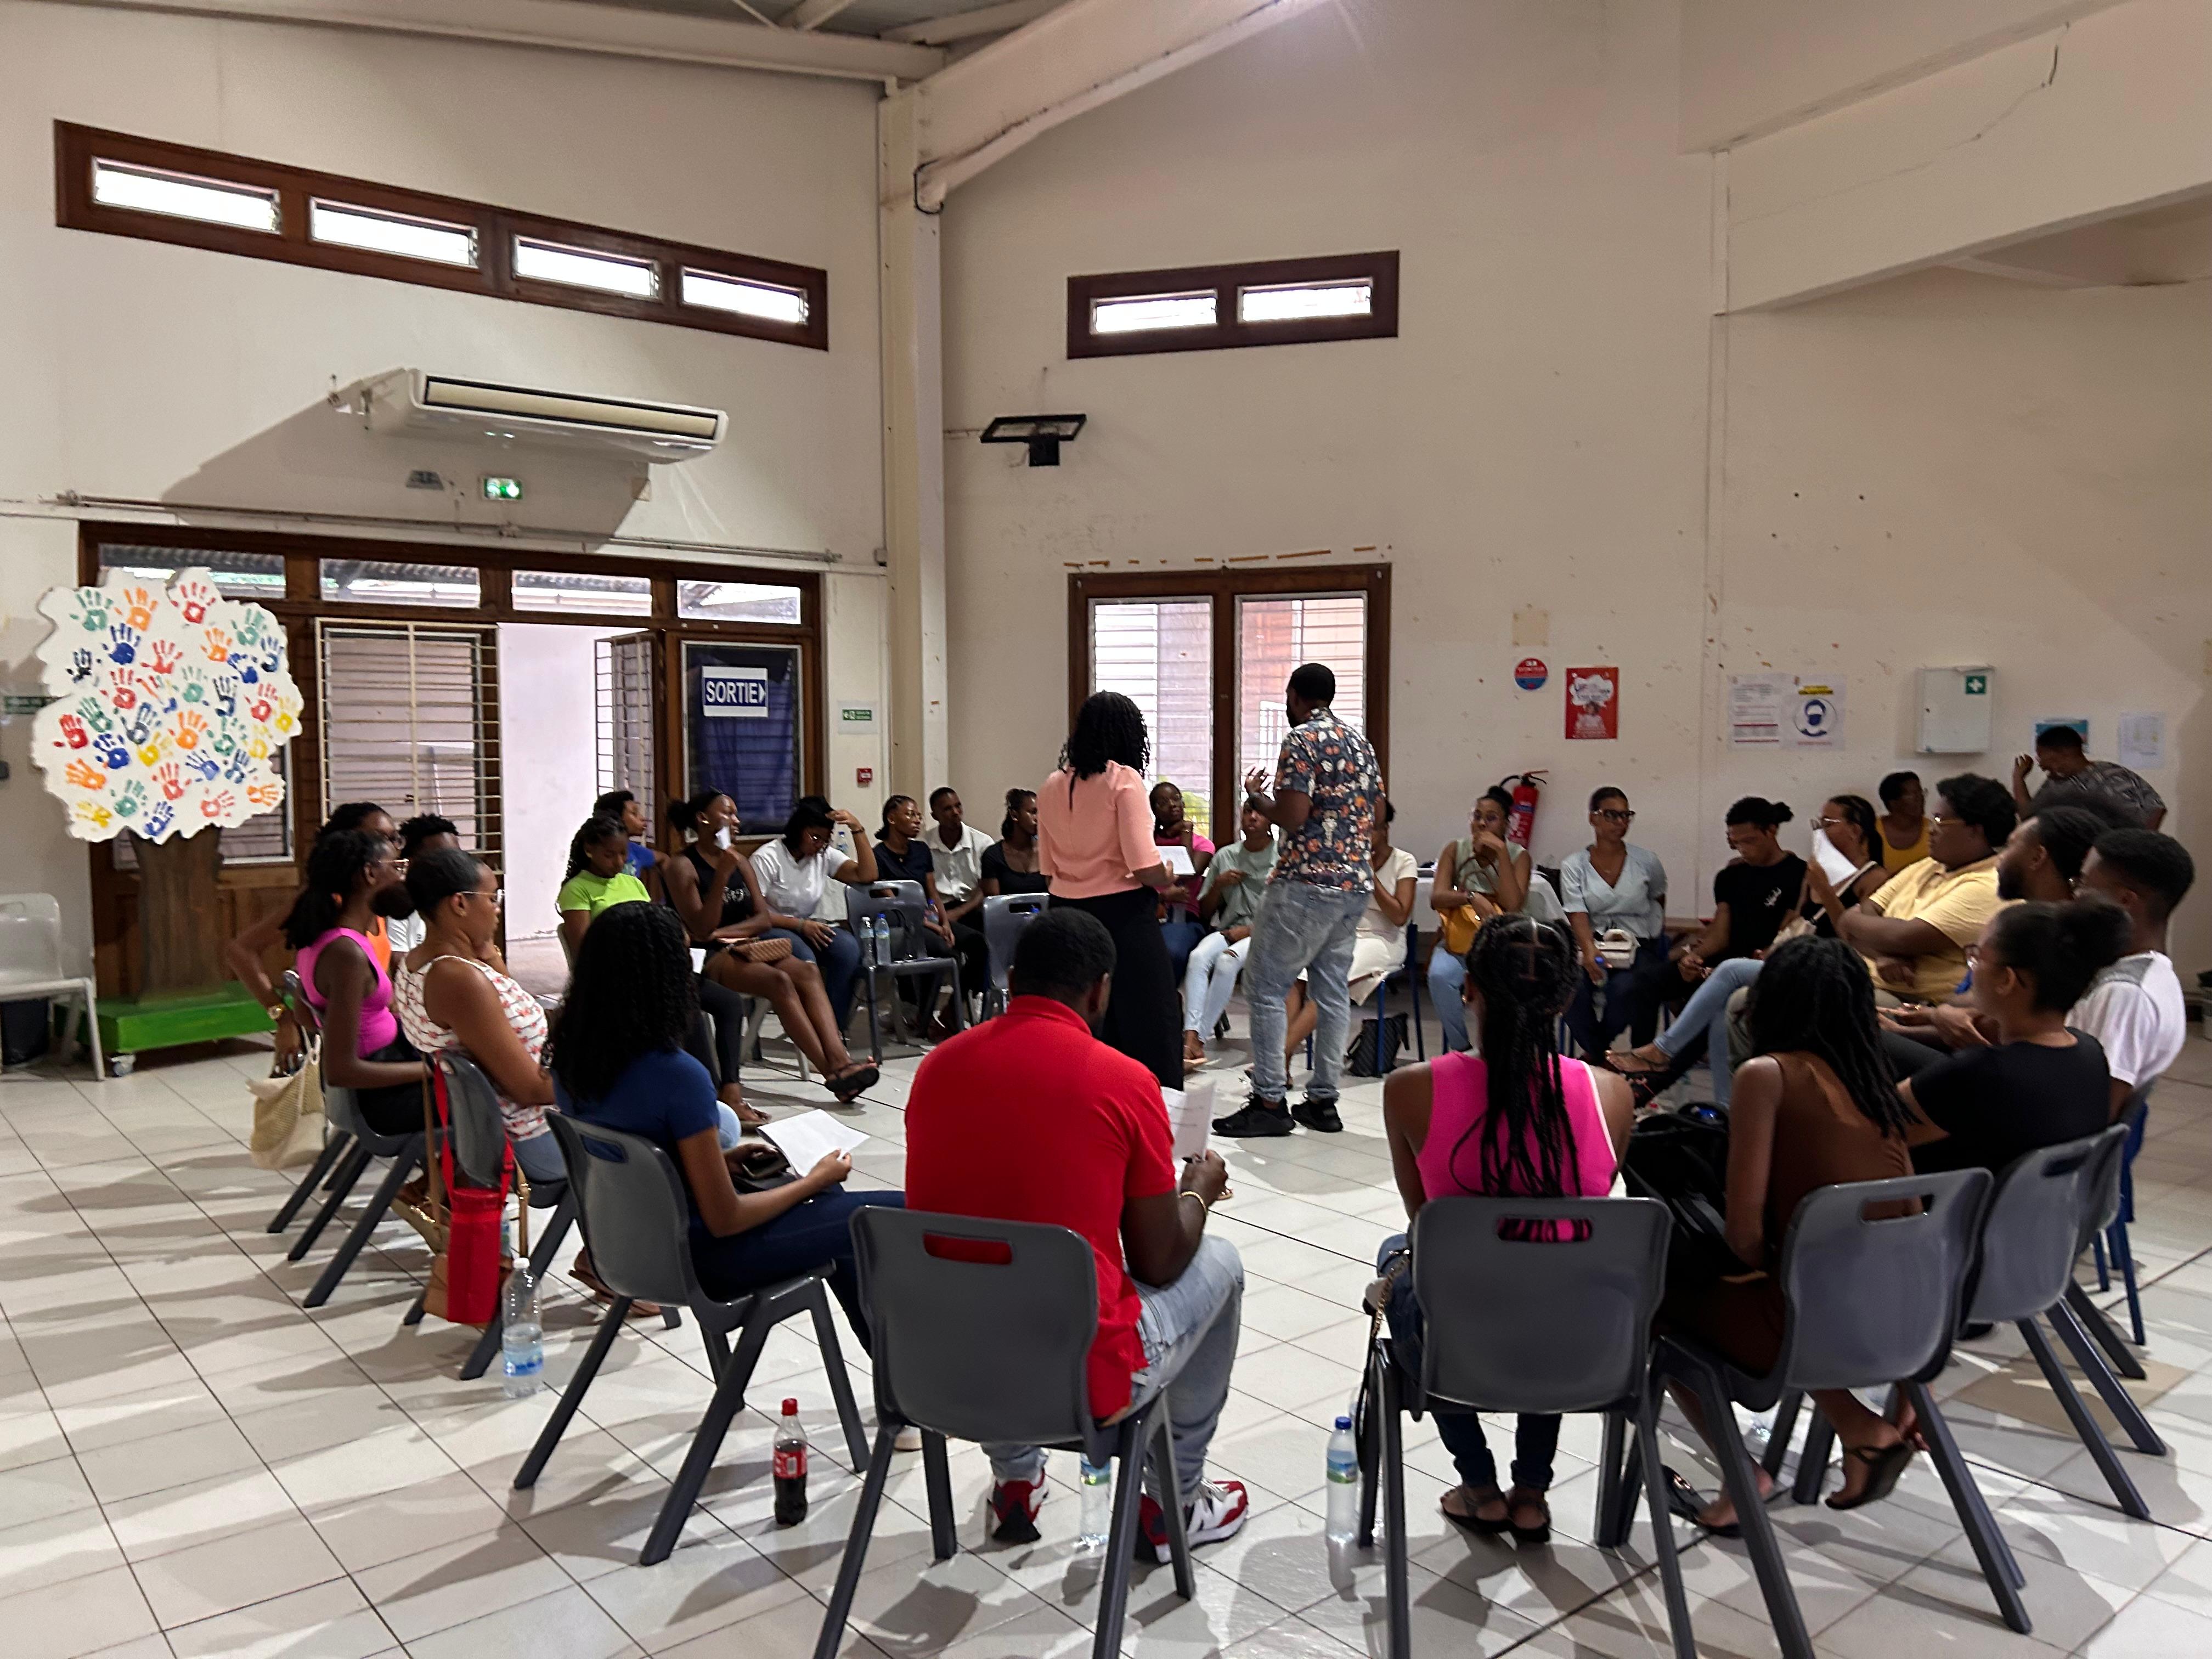     La MILSUD lance un groupe de parole pour les jeunes

